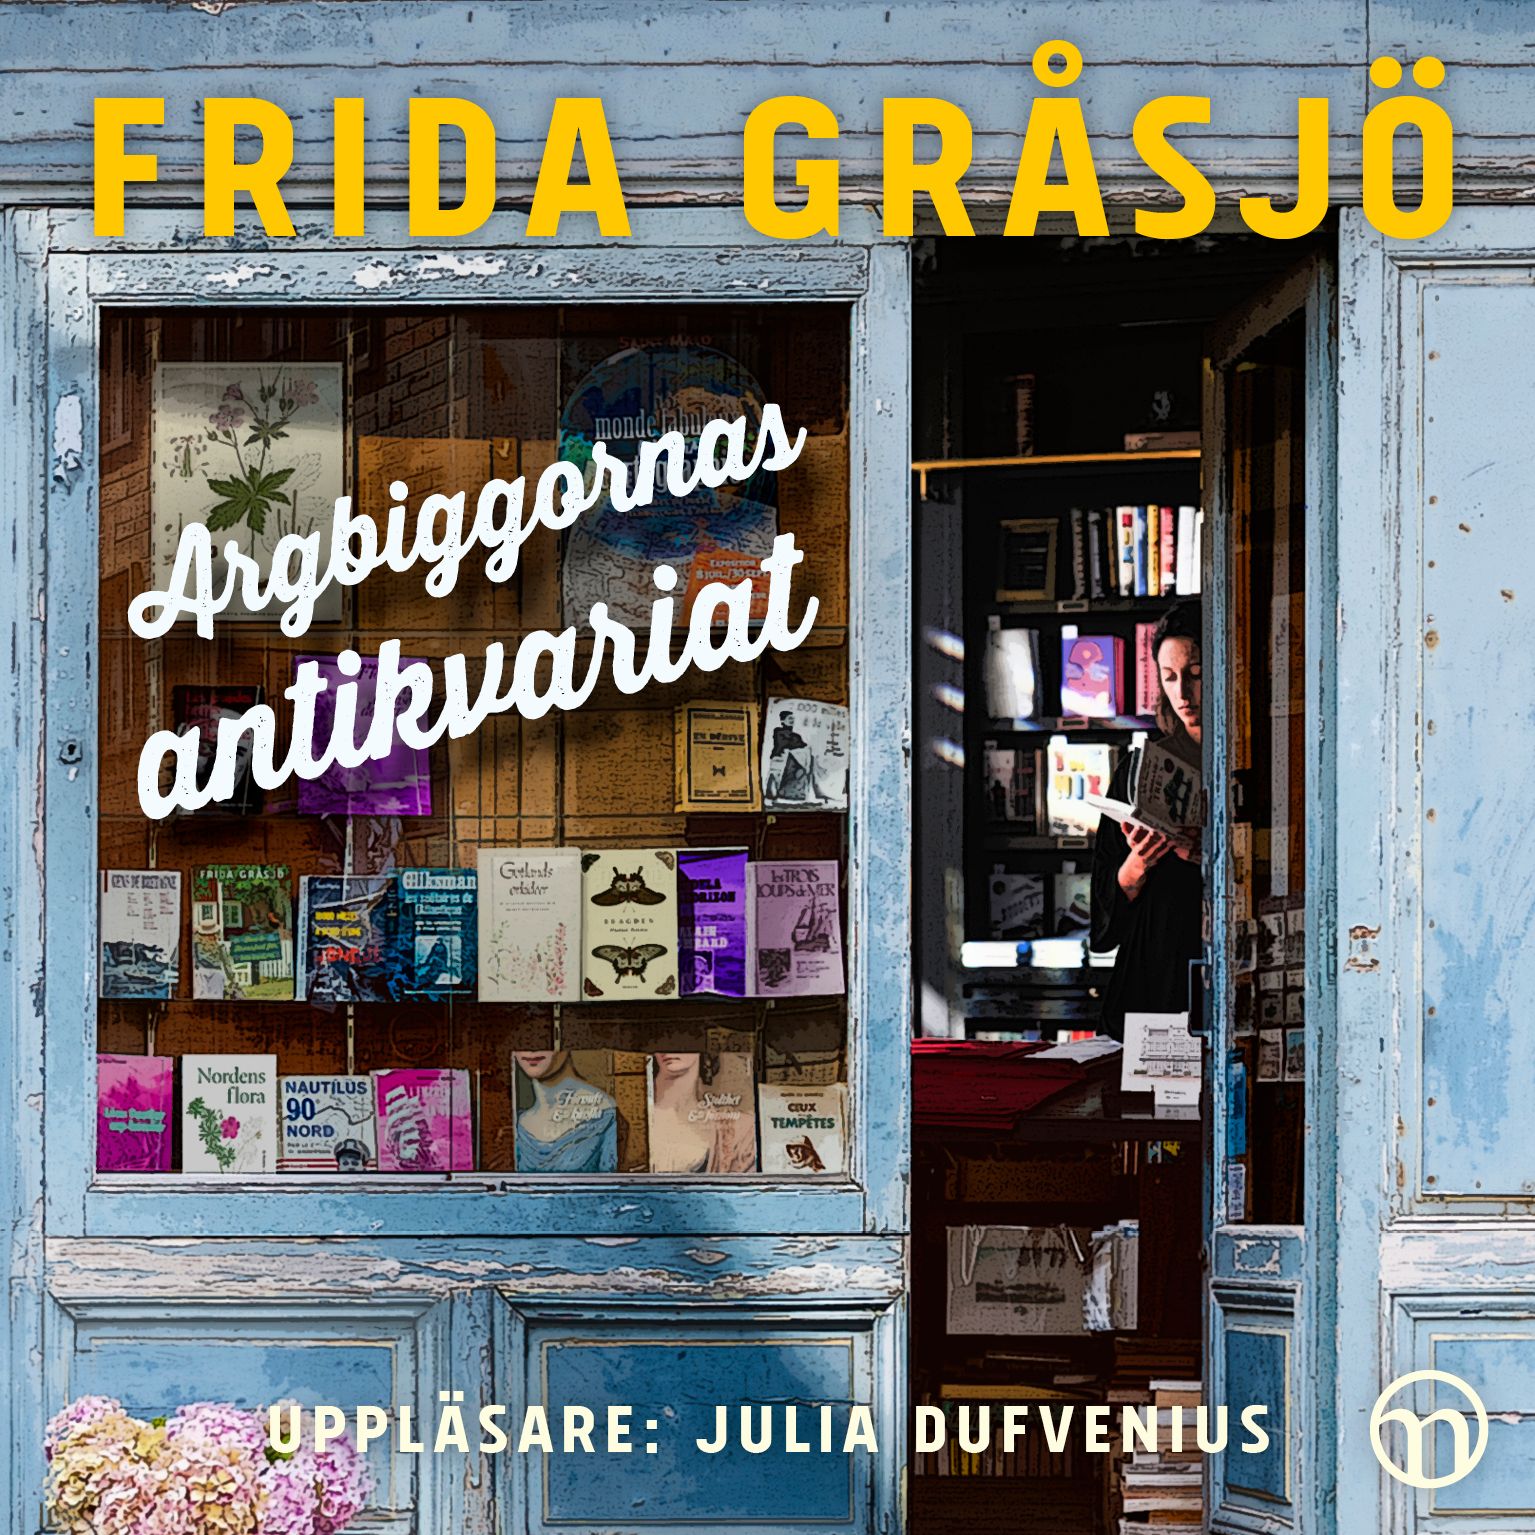 Argbiggornas antikvariat, ljudbok av Frida Gråsjö